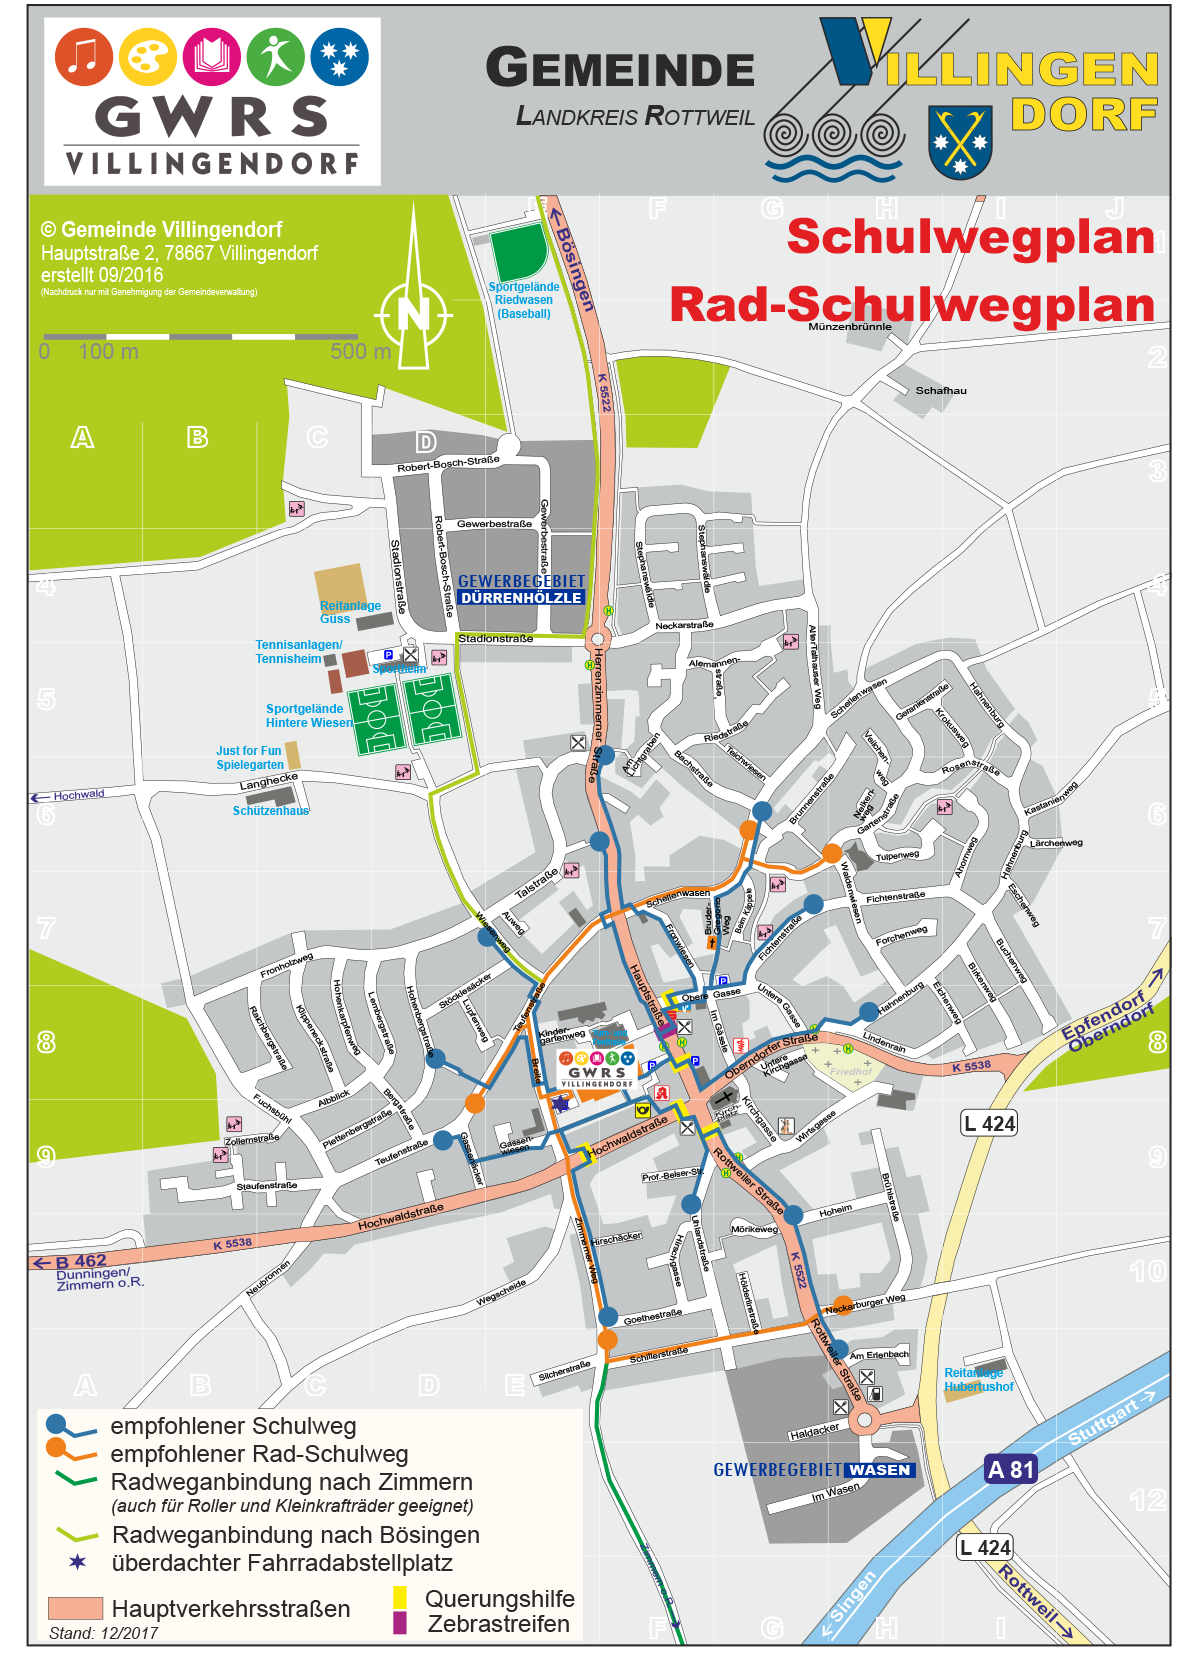 Schulwegplan GWRS Villingendorf (Stand Dezember 2017)